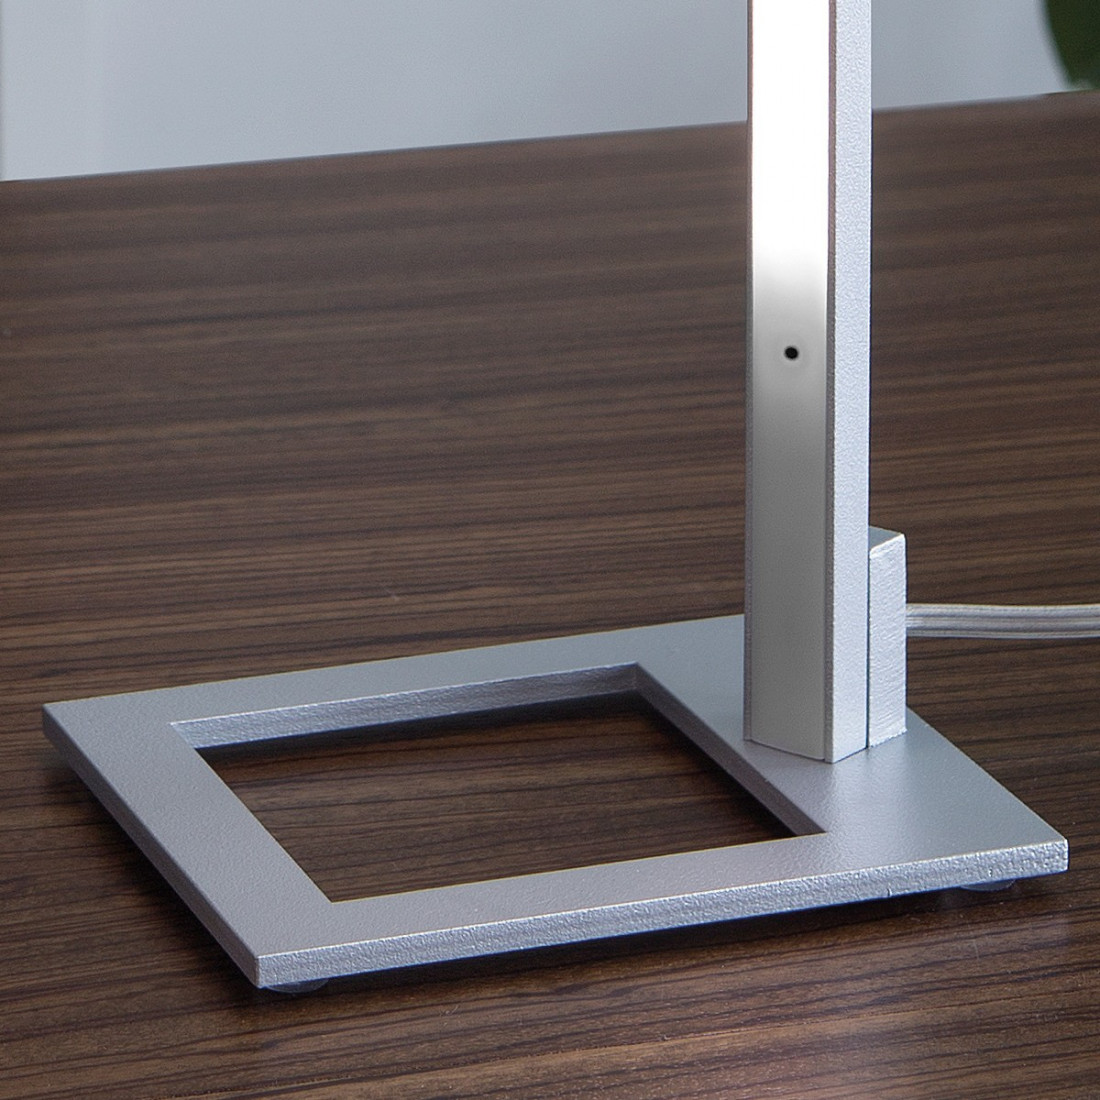 Abat-jour FB-SCIA 2127 L 5W LED 550 LM touch dimmer metal lampe de table moderne intérieur ultramoderne